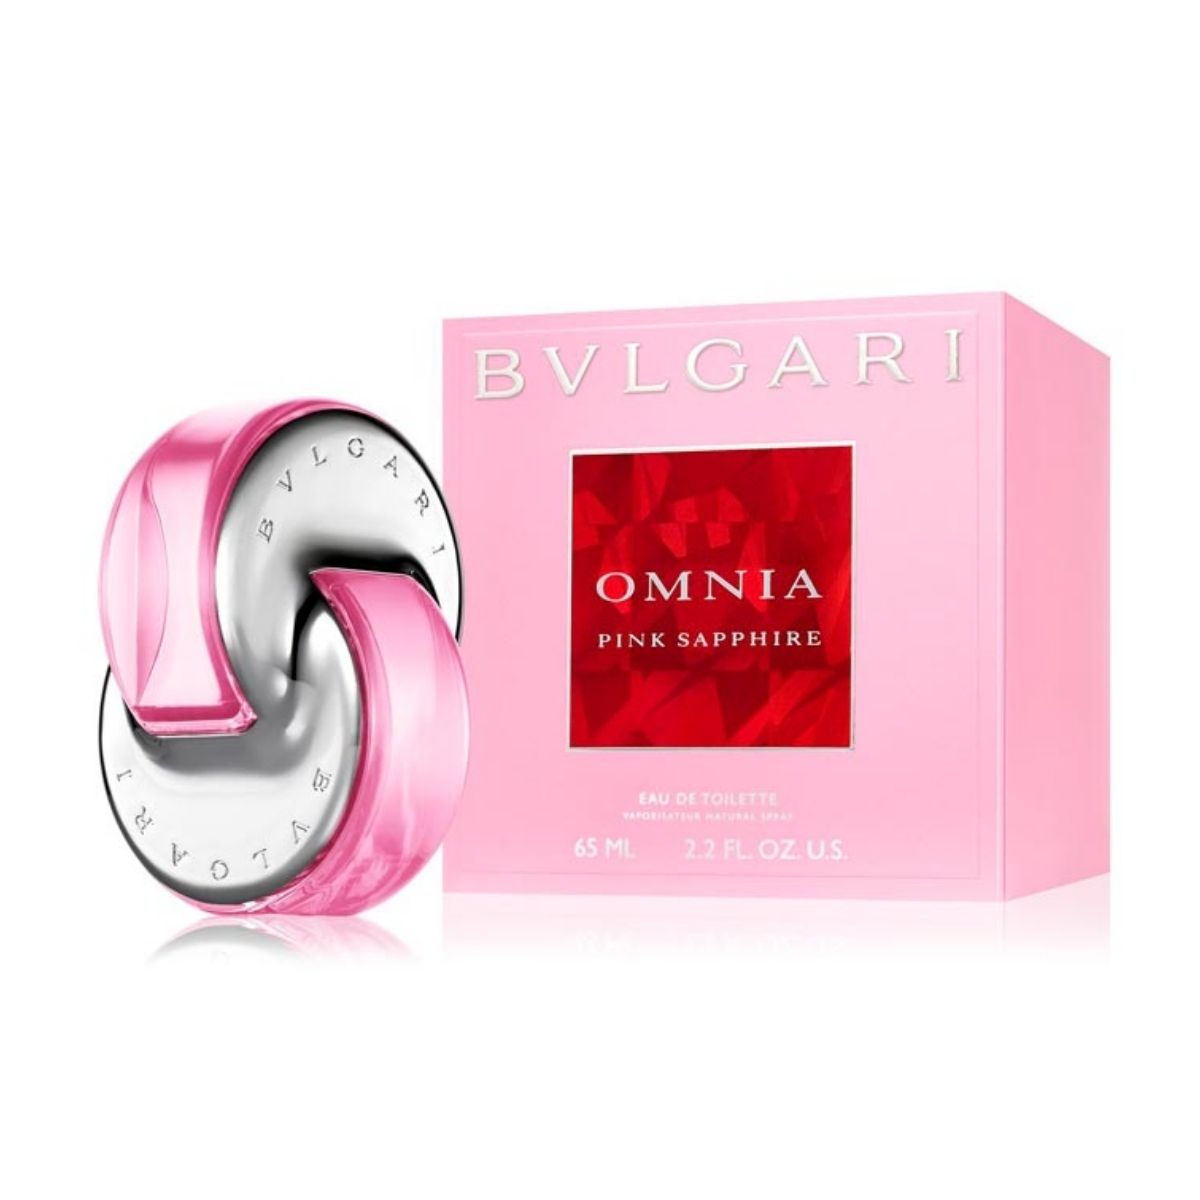 Omnia Pink Sapphire Bvlgari Edt 65Ml Mujer